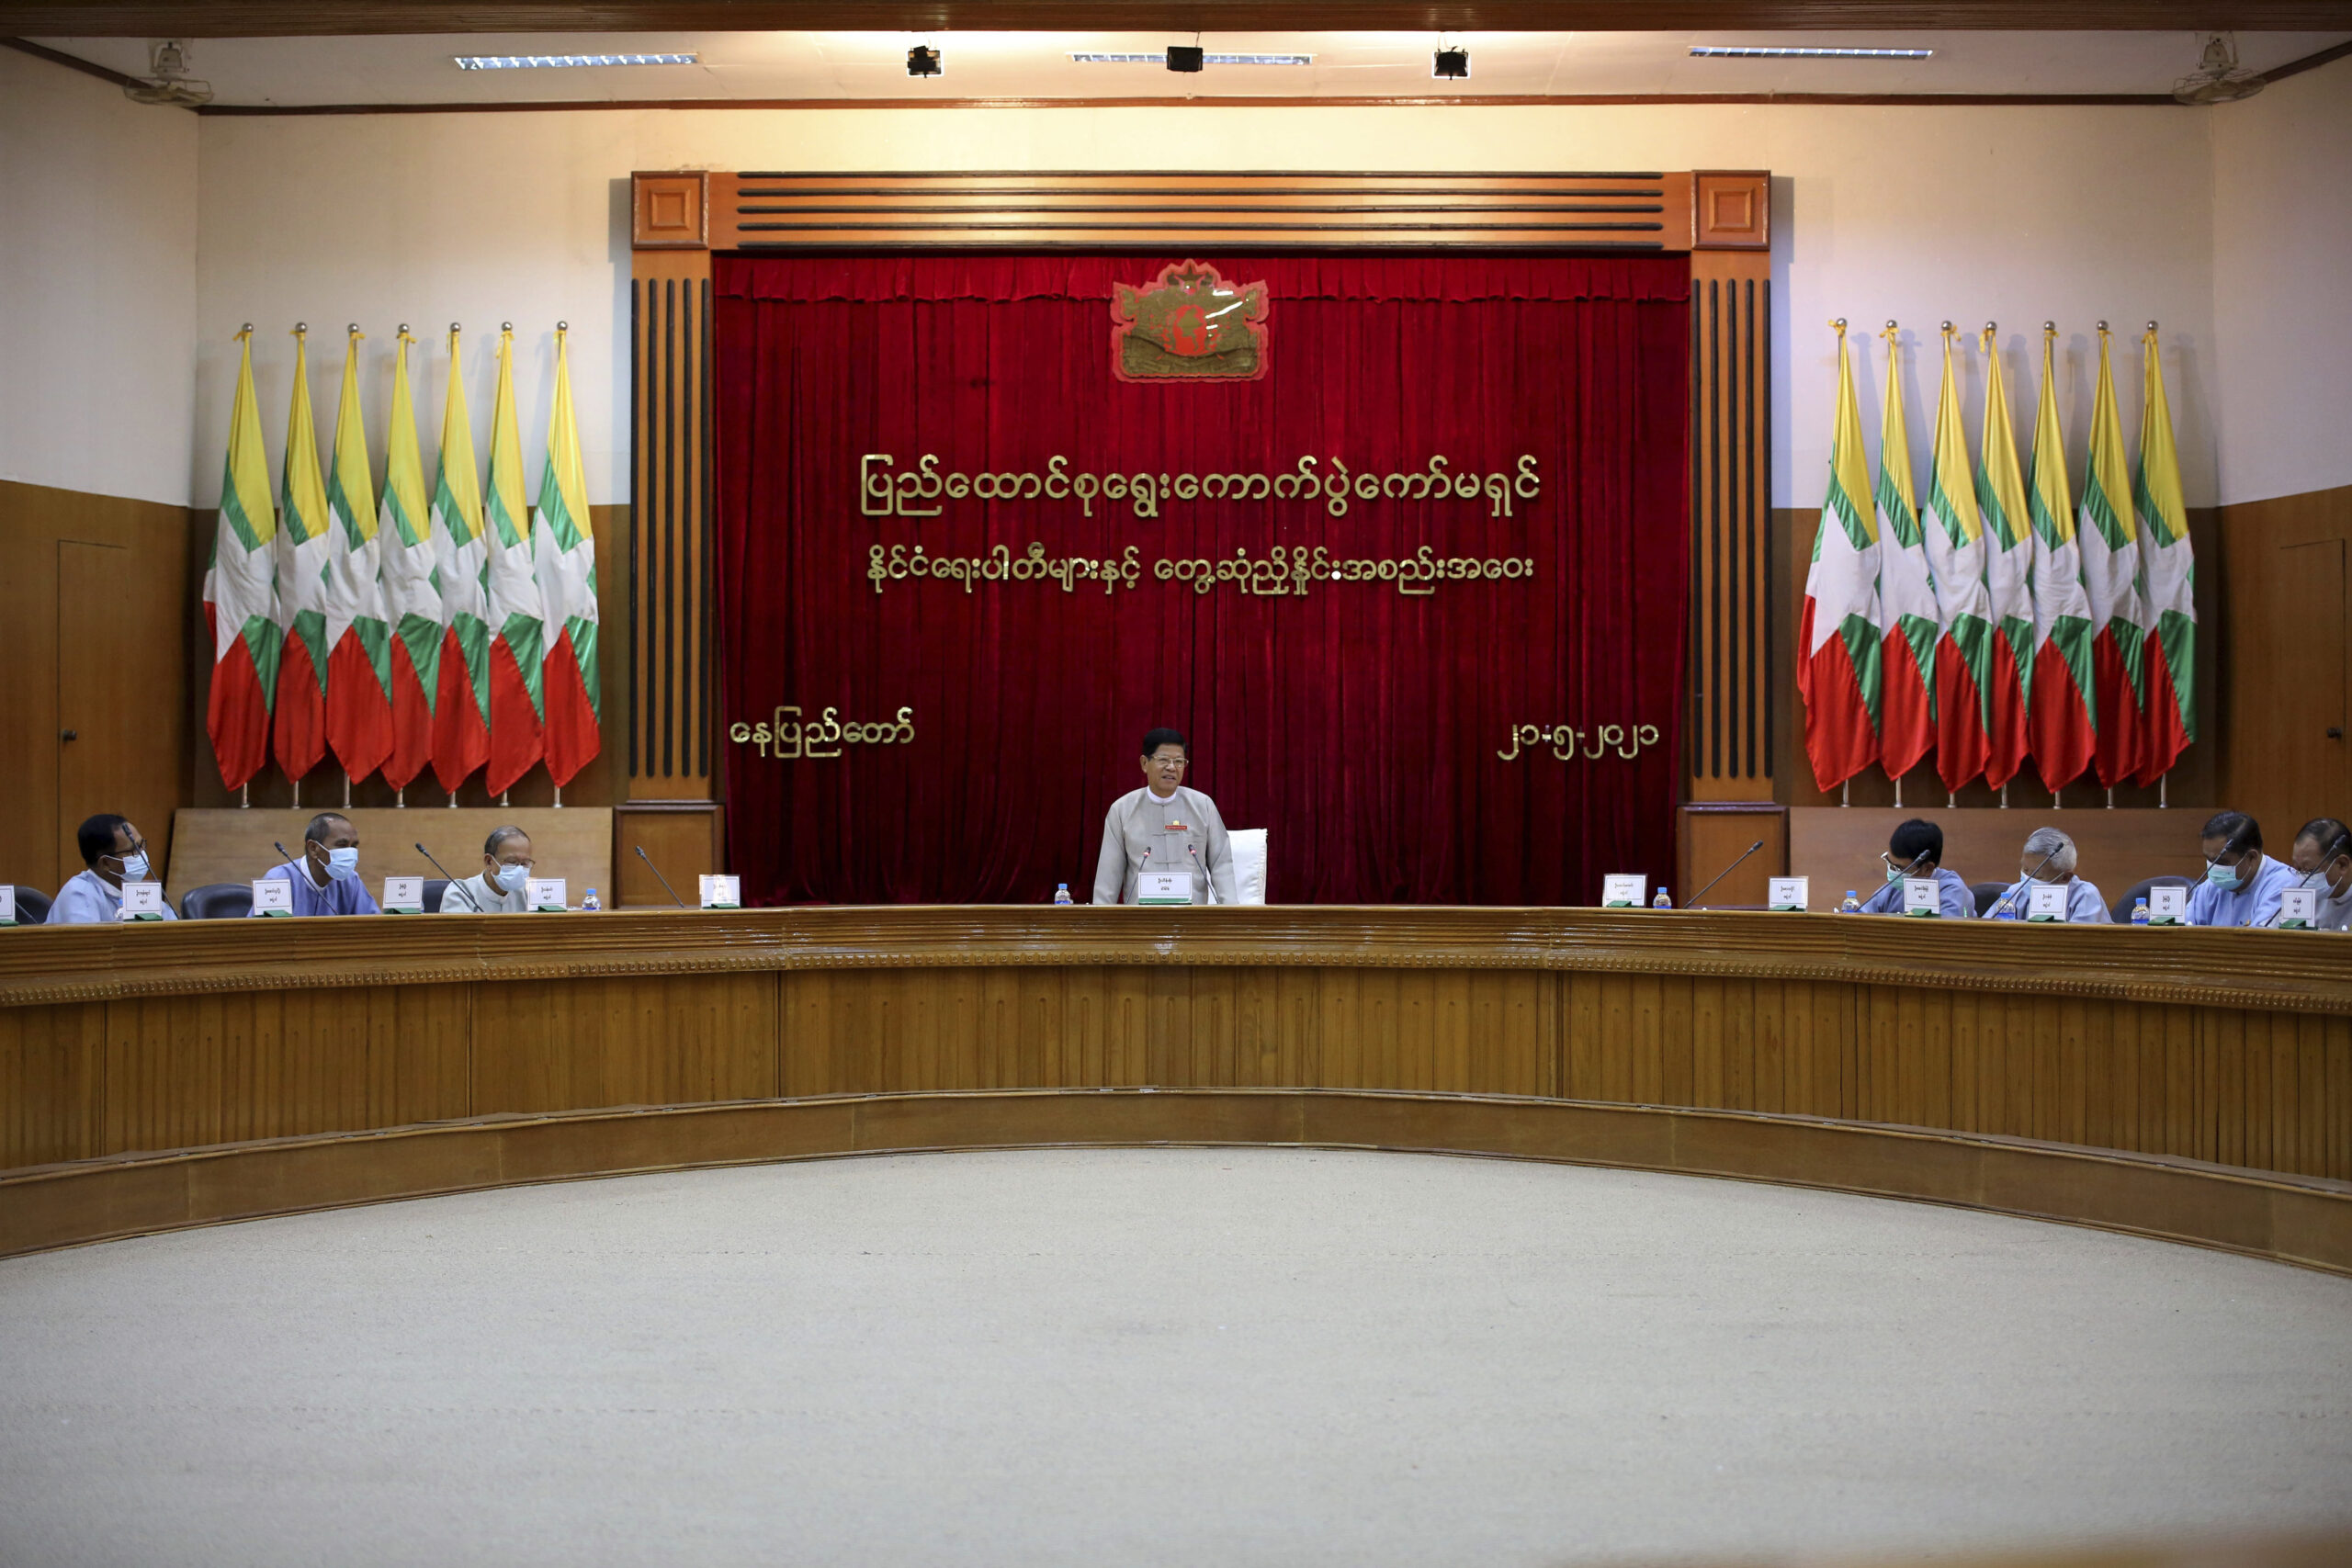 La junta birmana ordena la disolución del partido de Aung San Suu Kyi